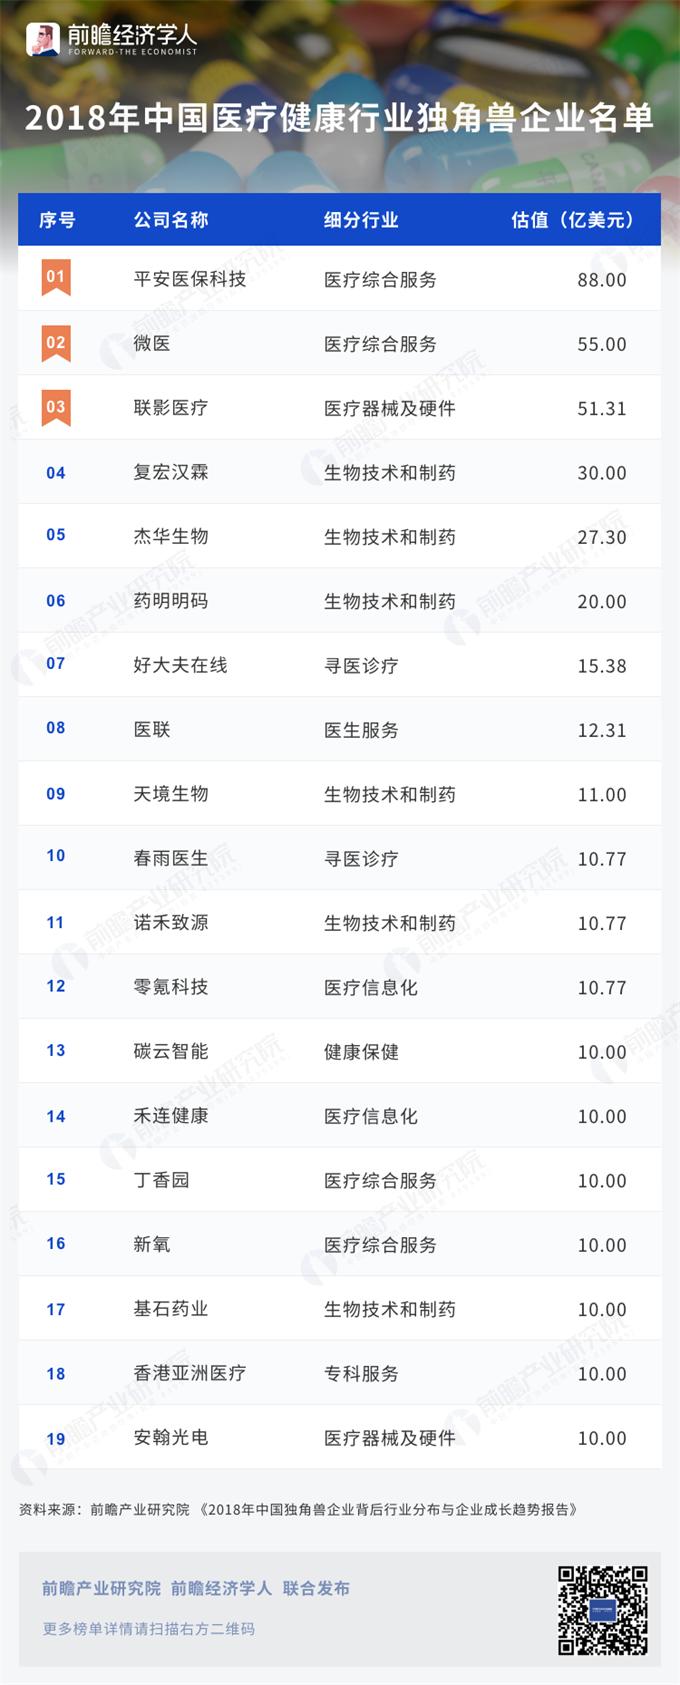 2018中国医疗健康行业独角兽企业名单